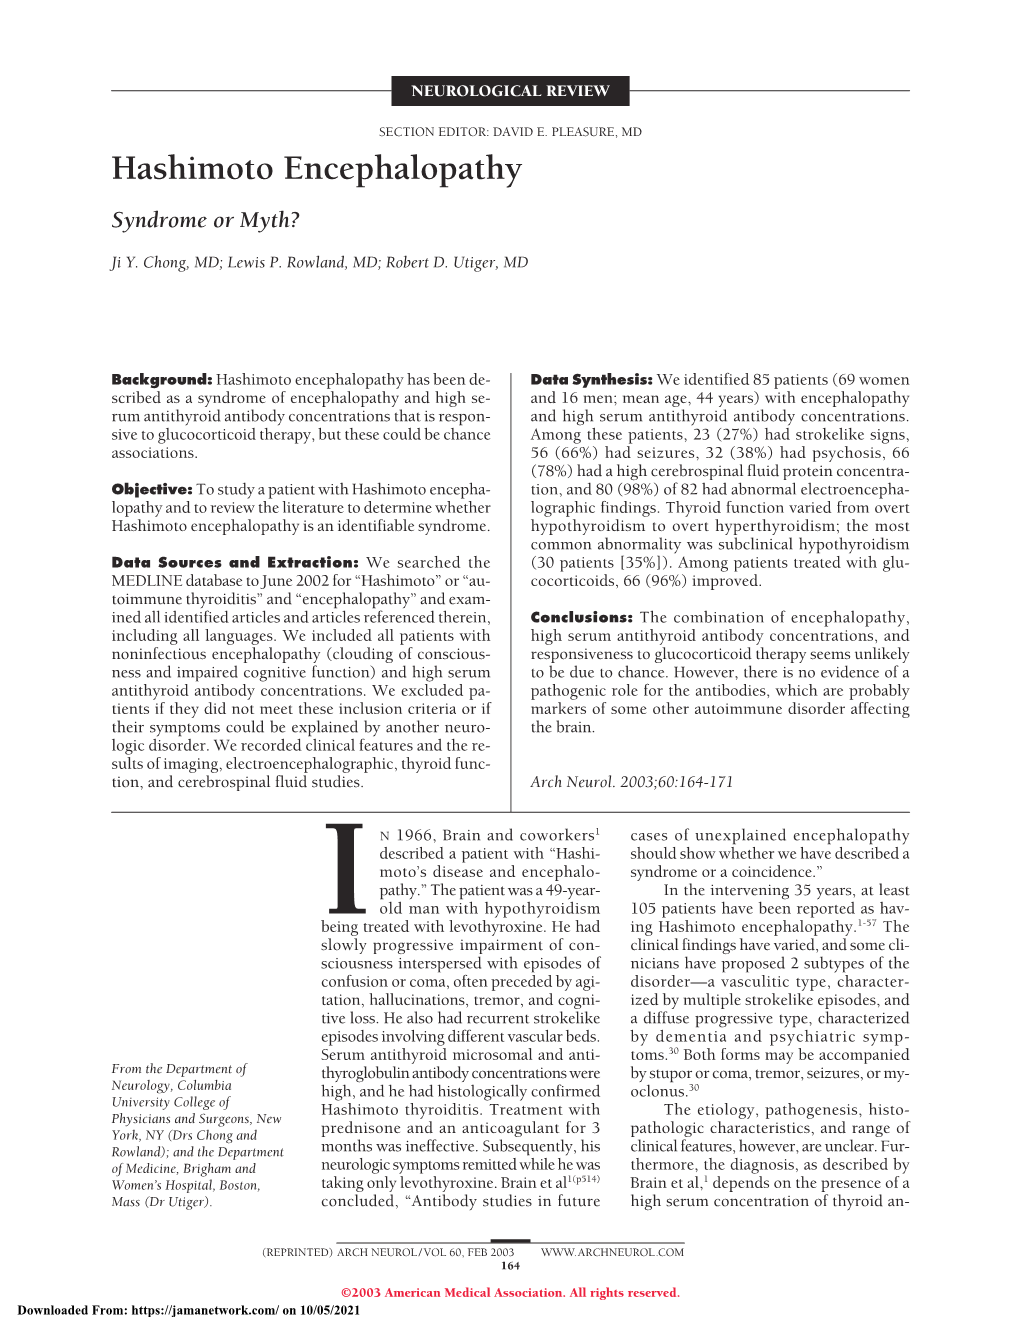 Hashimoto Encephalopathy Syndrome Or Myth?